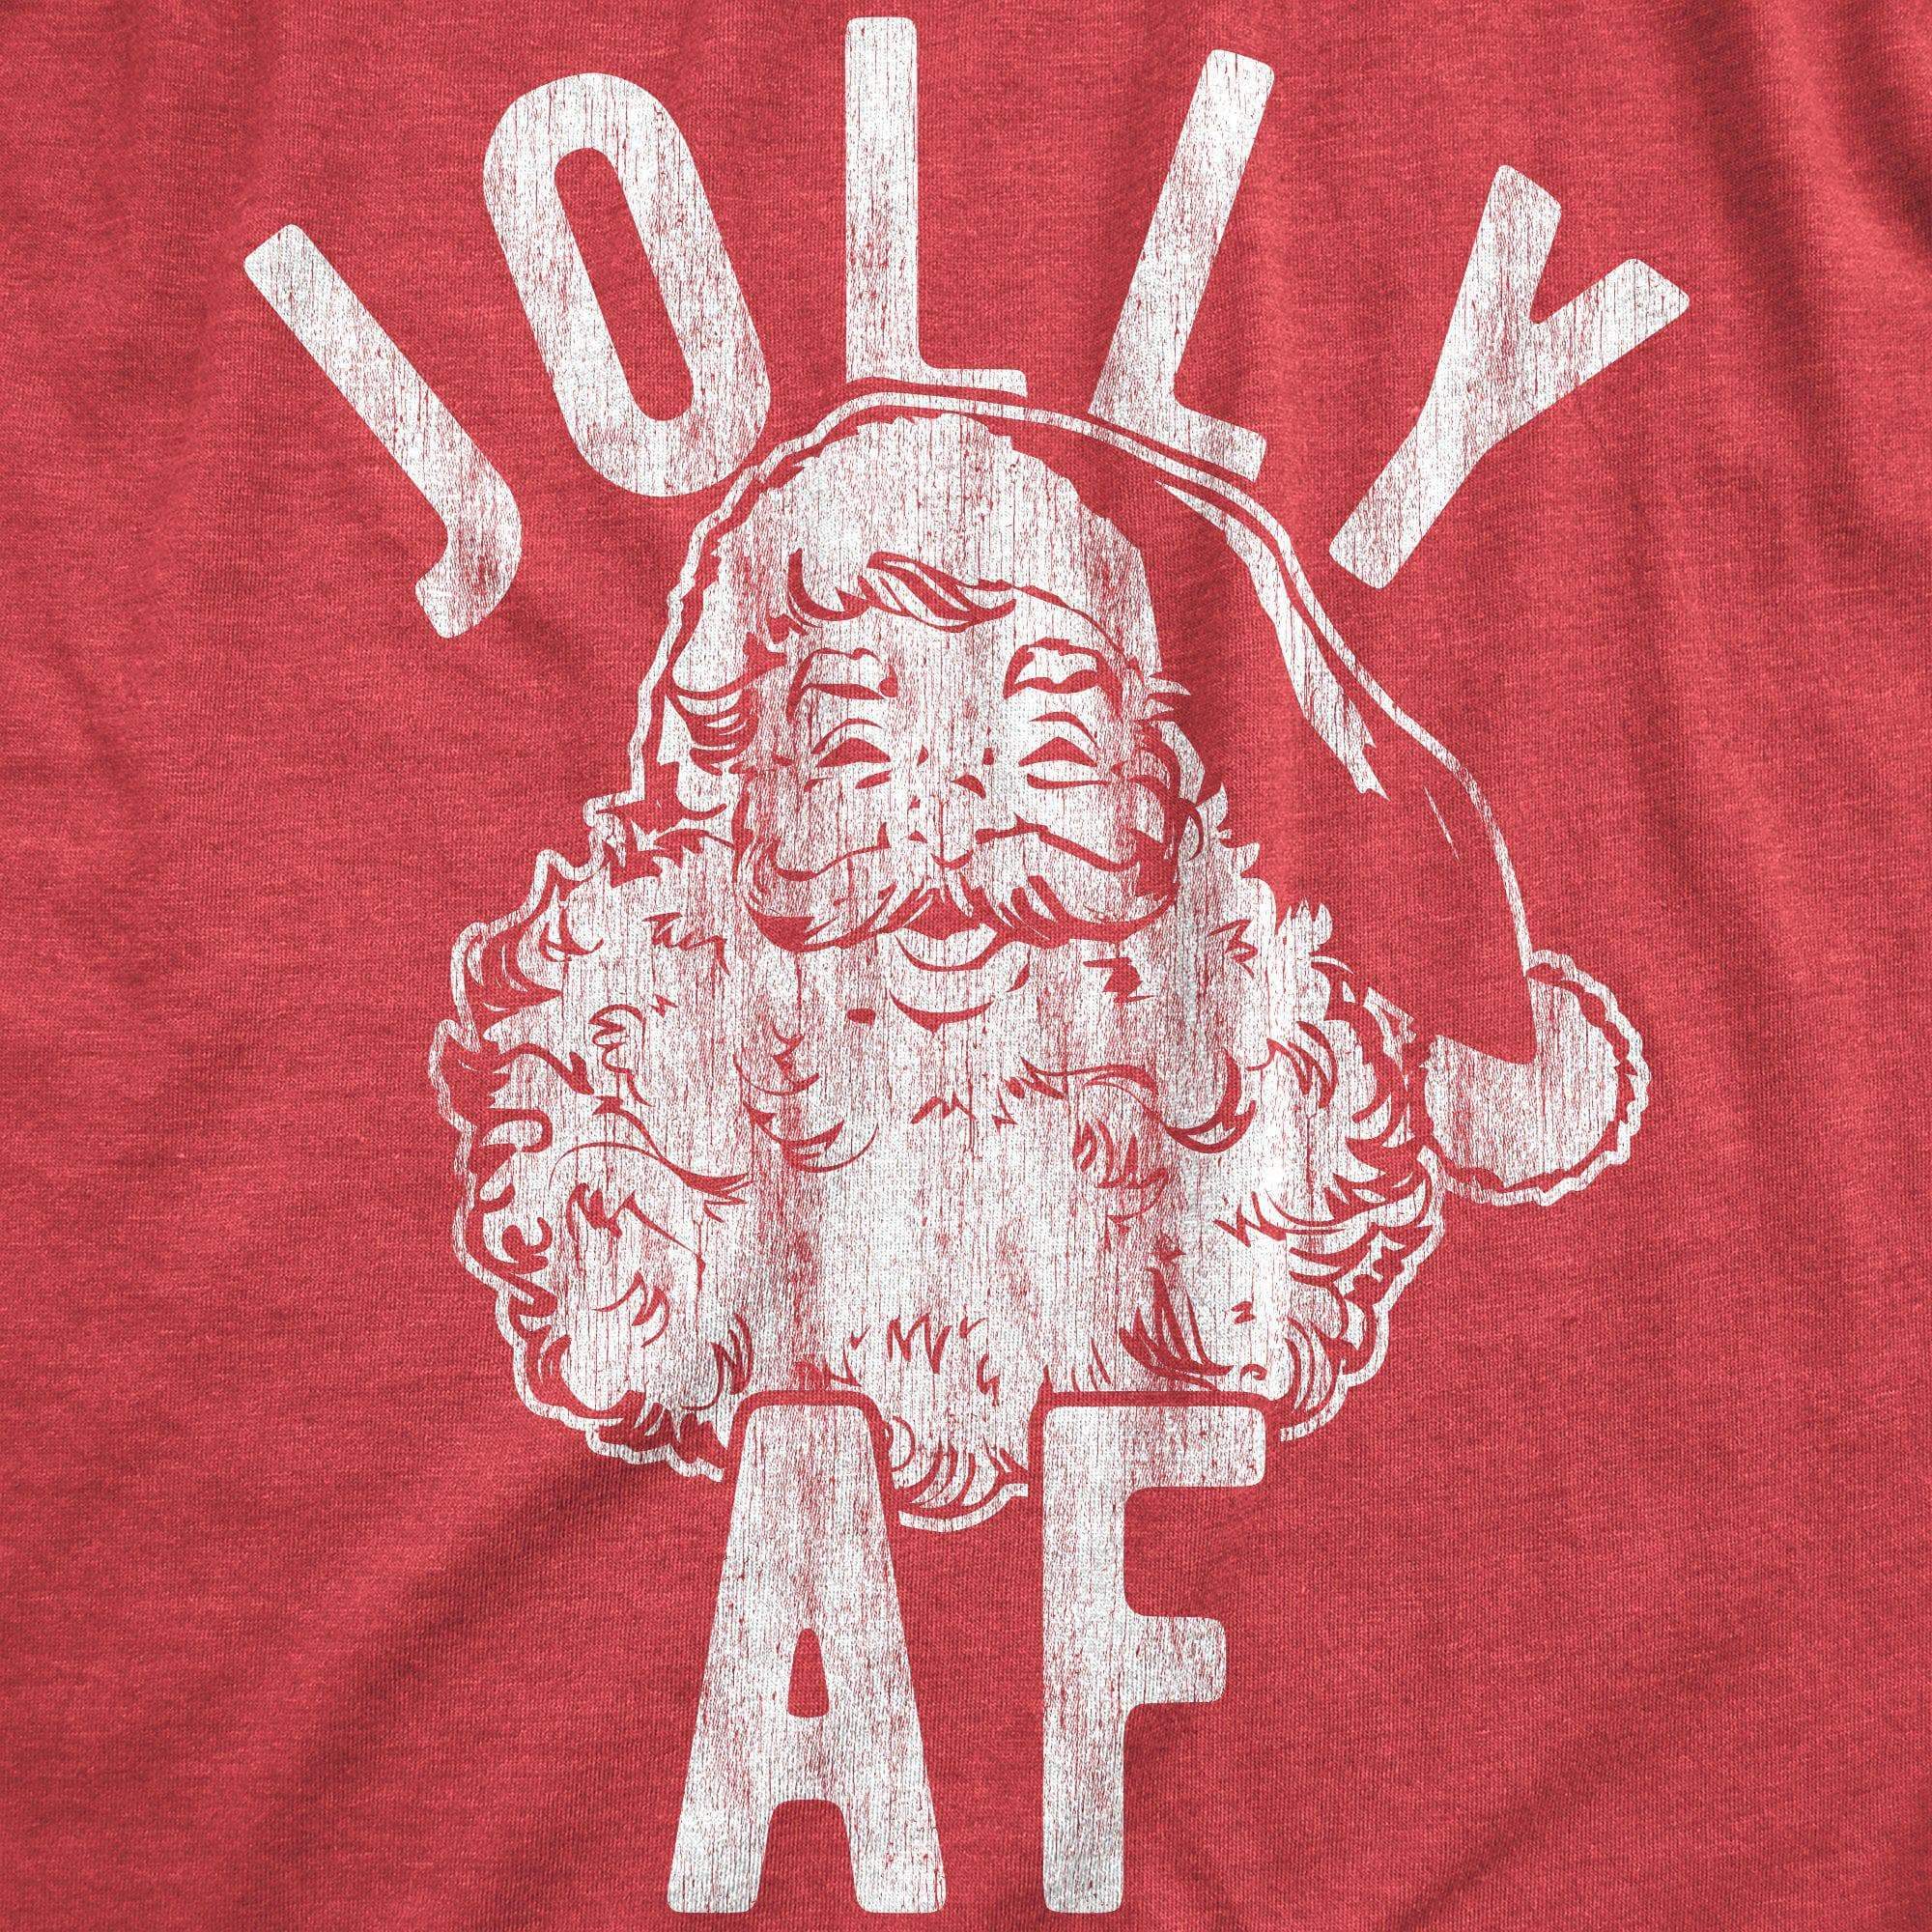 Jolly AF Men's Tshirt - Crazy Dog T-Shirts